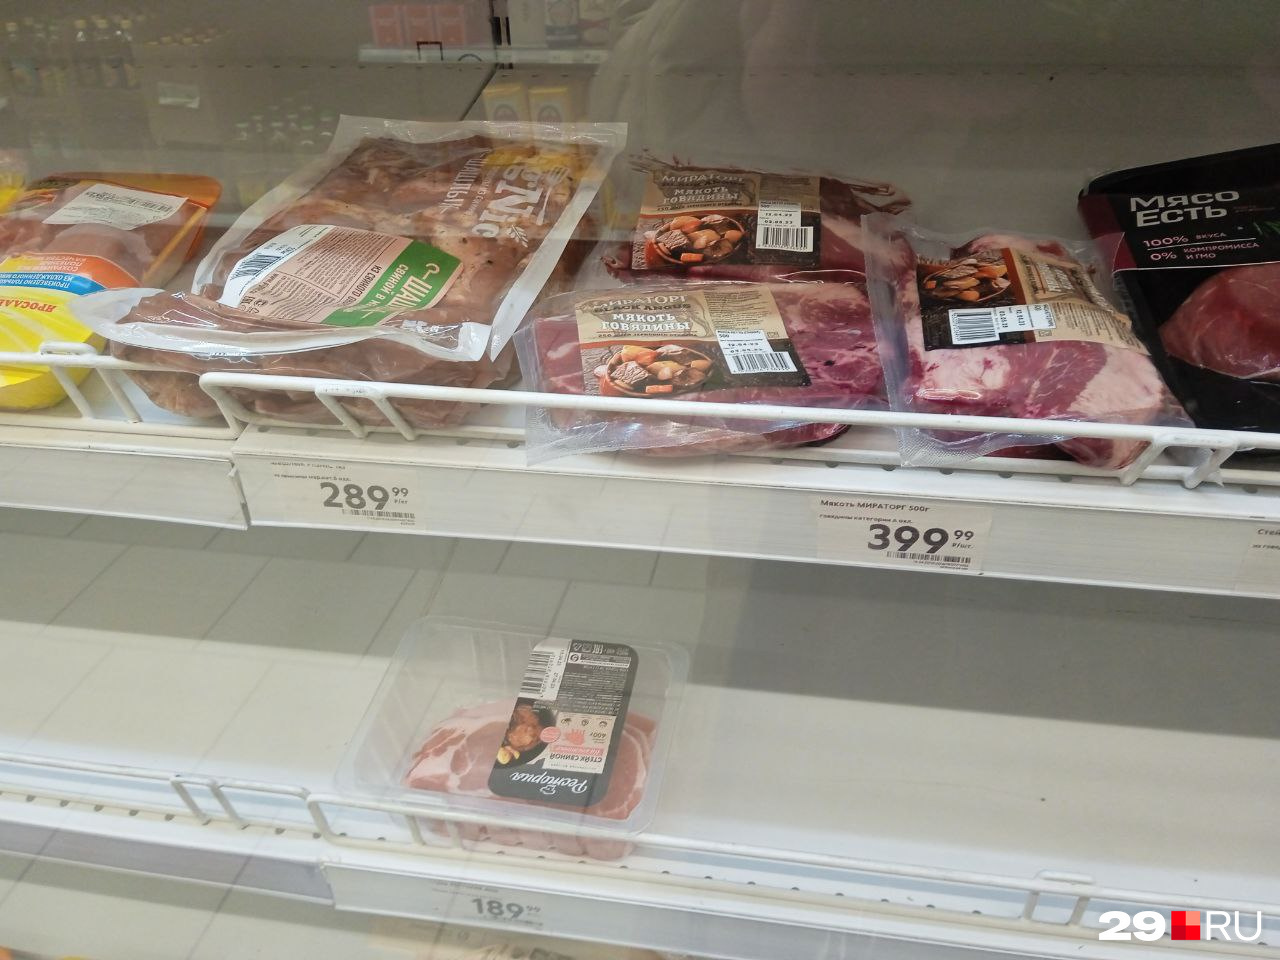 Шашлык из свинины в вакуумной упаковке — 290 рублей